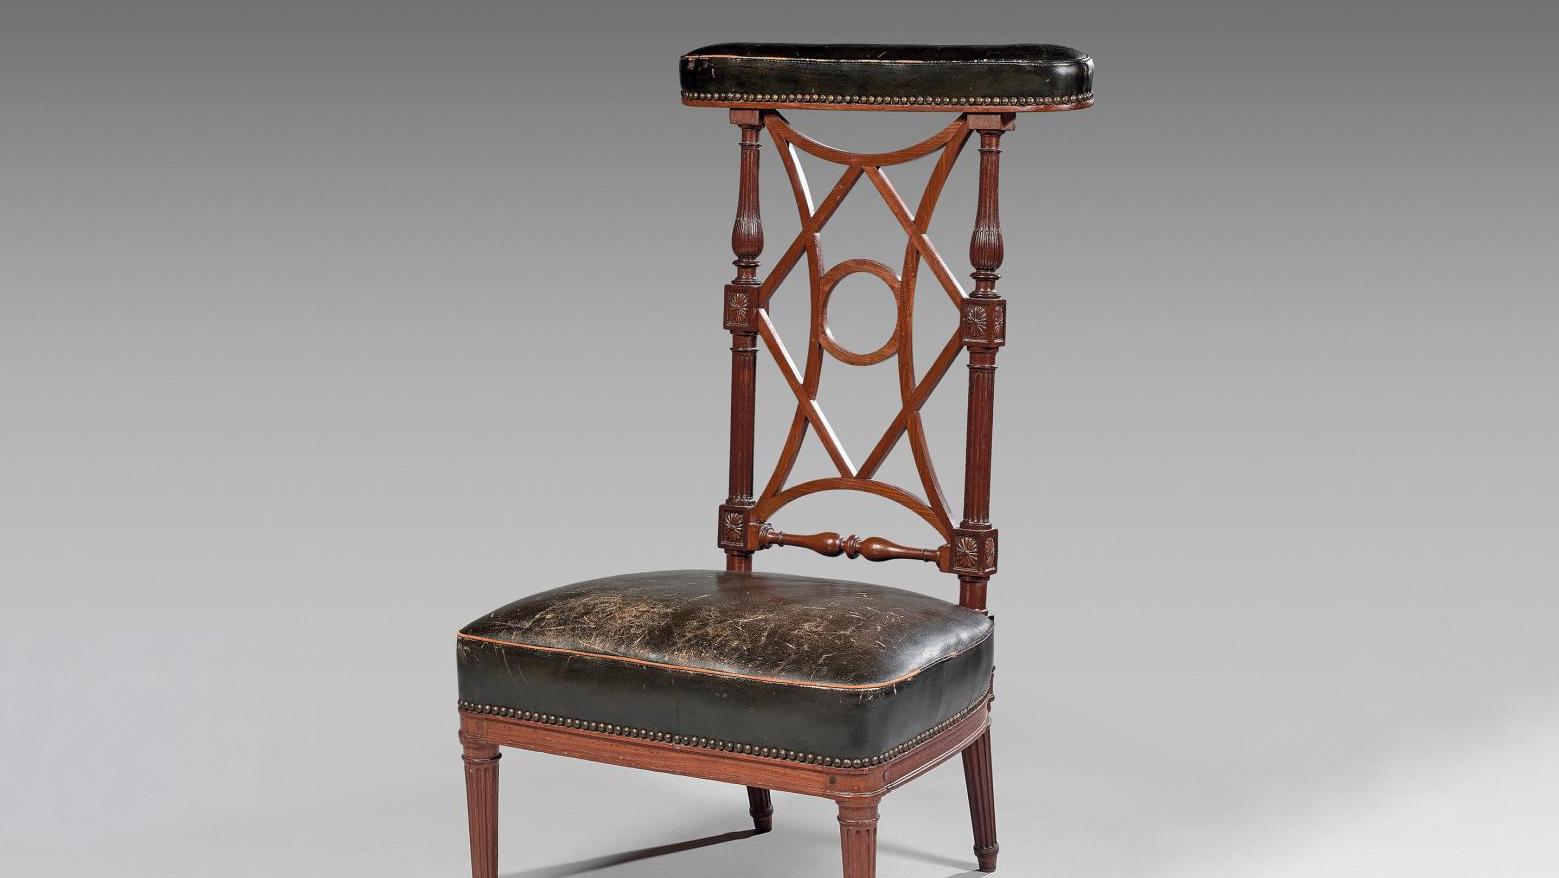 18 415 € Époque Louis XVI, chaise ponteuse en acajou de Cuba, porte une estampille... Cote : voyeuse la ponteuse ?